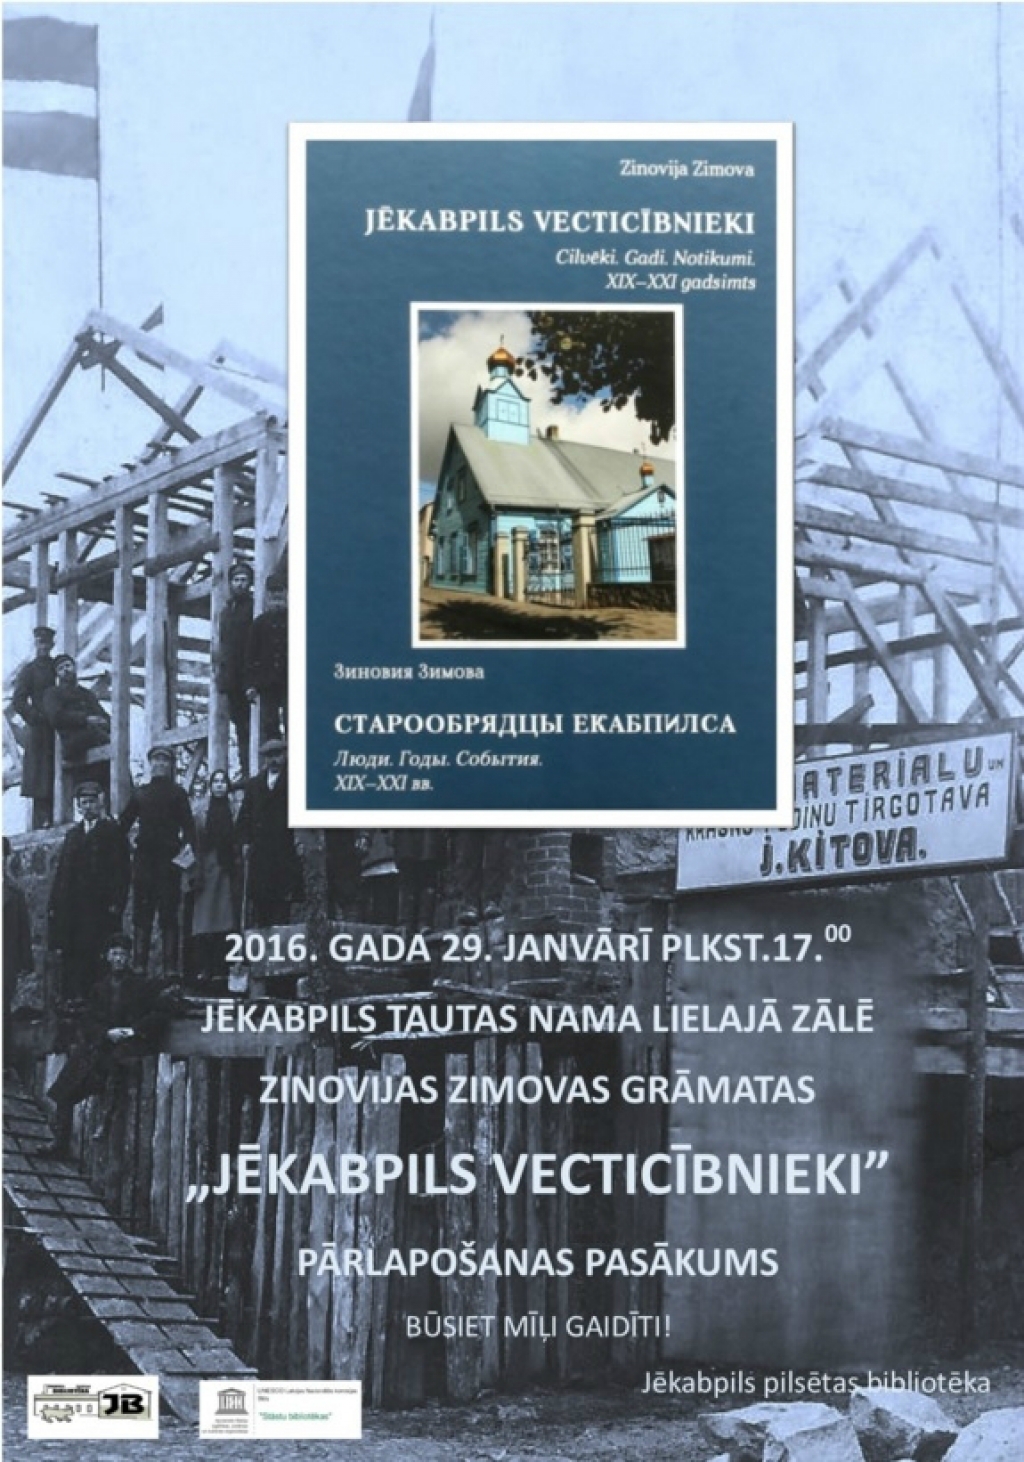 Šodien notiks Zinovijas Zimovas grāmatas "Jēkabpils vecticībnieki" atvēršanas svētki